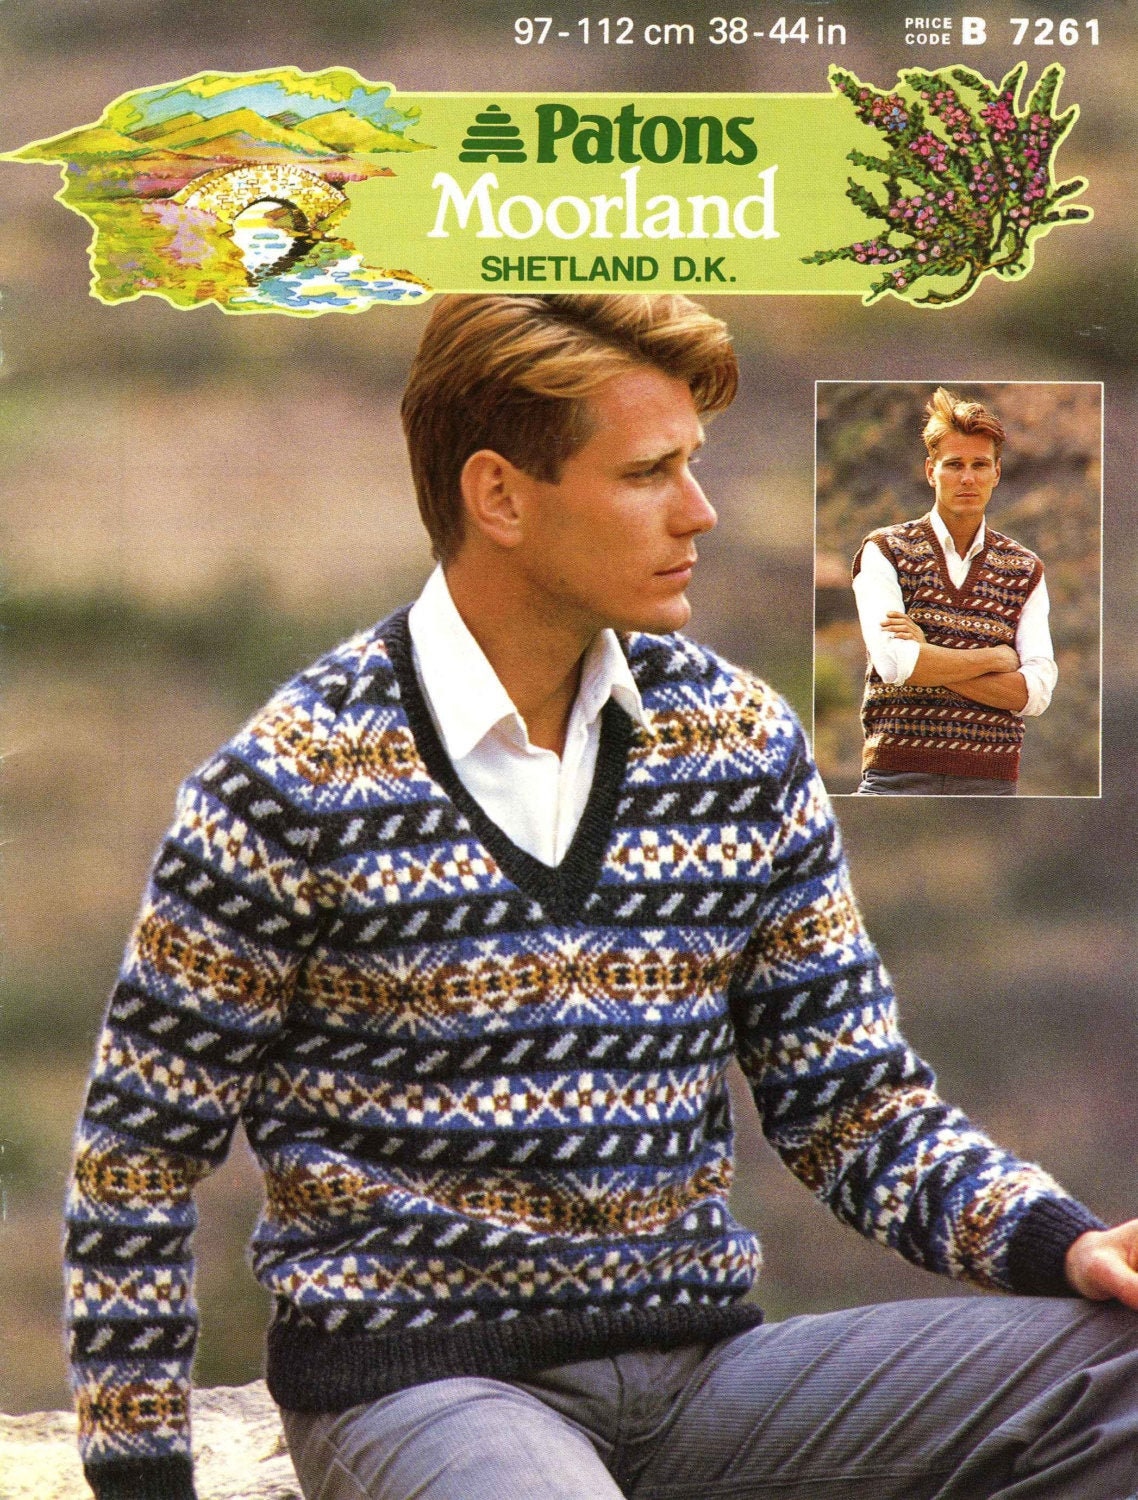 Mens Fair Isle Jumper & Sleeveless Sweater / Slipover, 38"-44" Chest, DK, 80s Knitting Pattern, Patons 7261